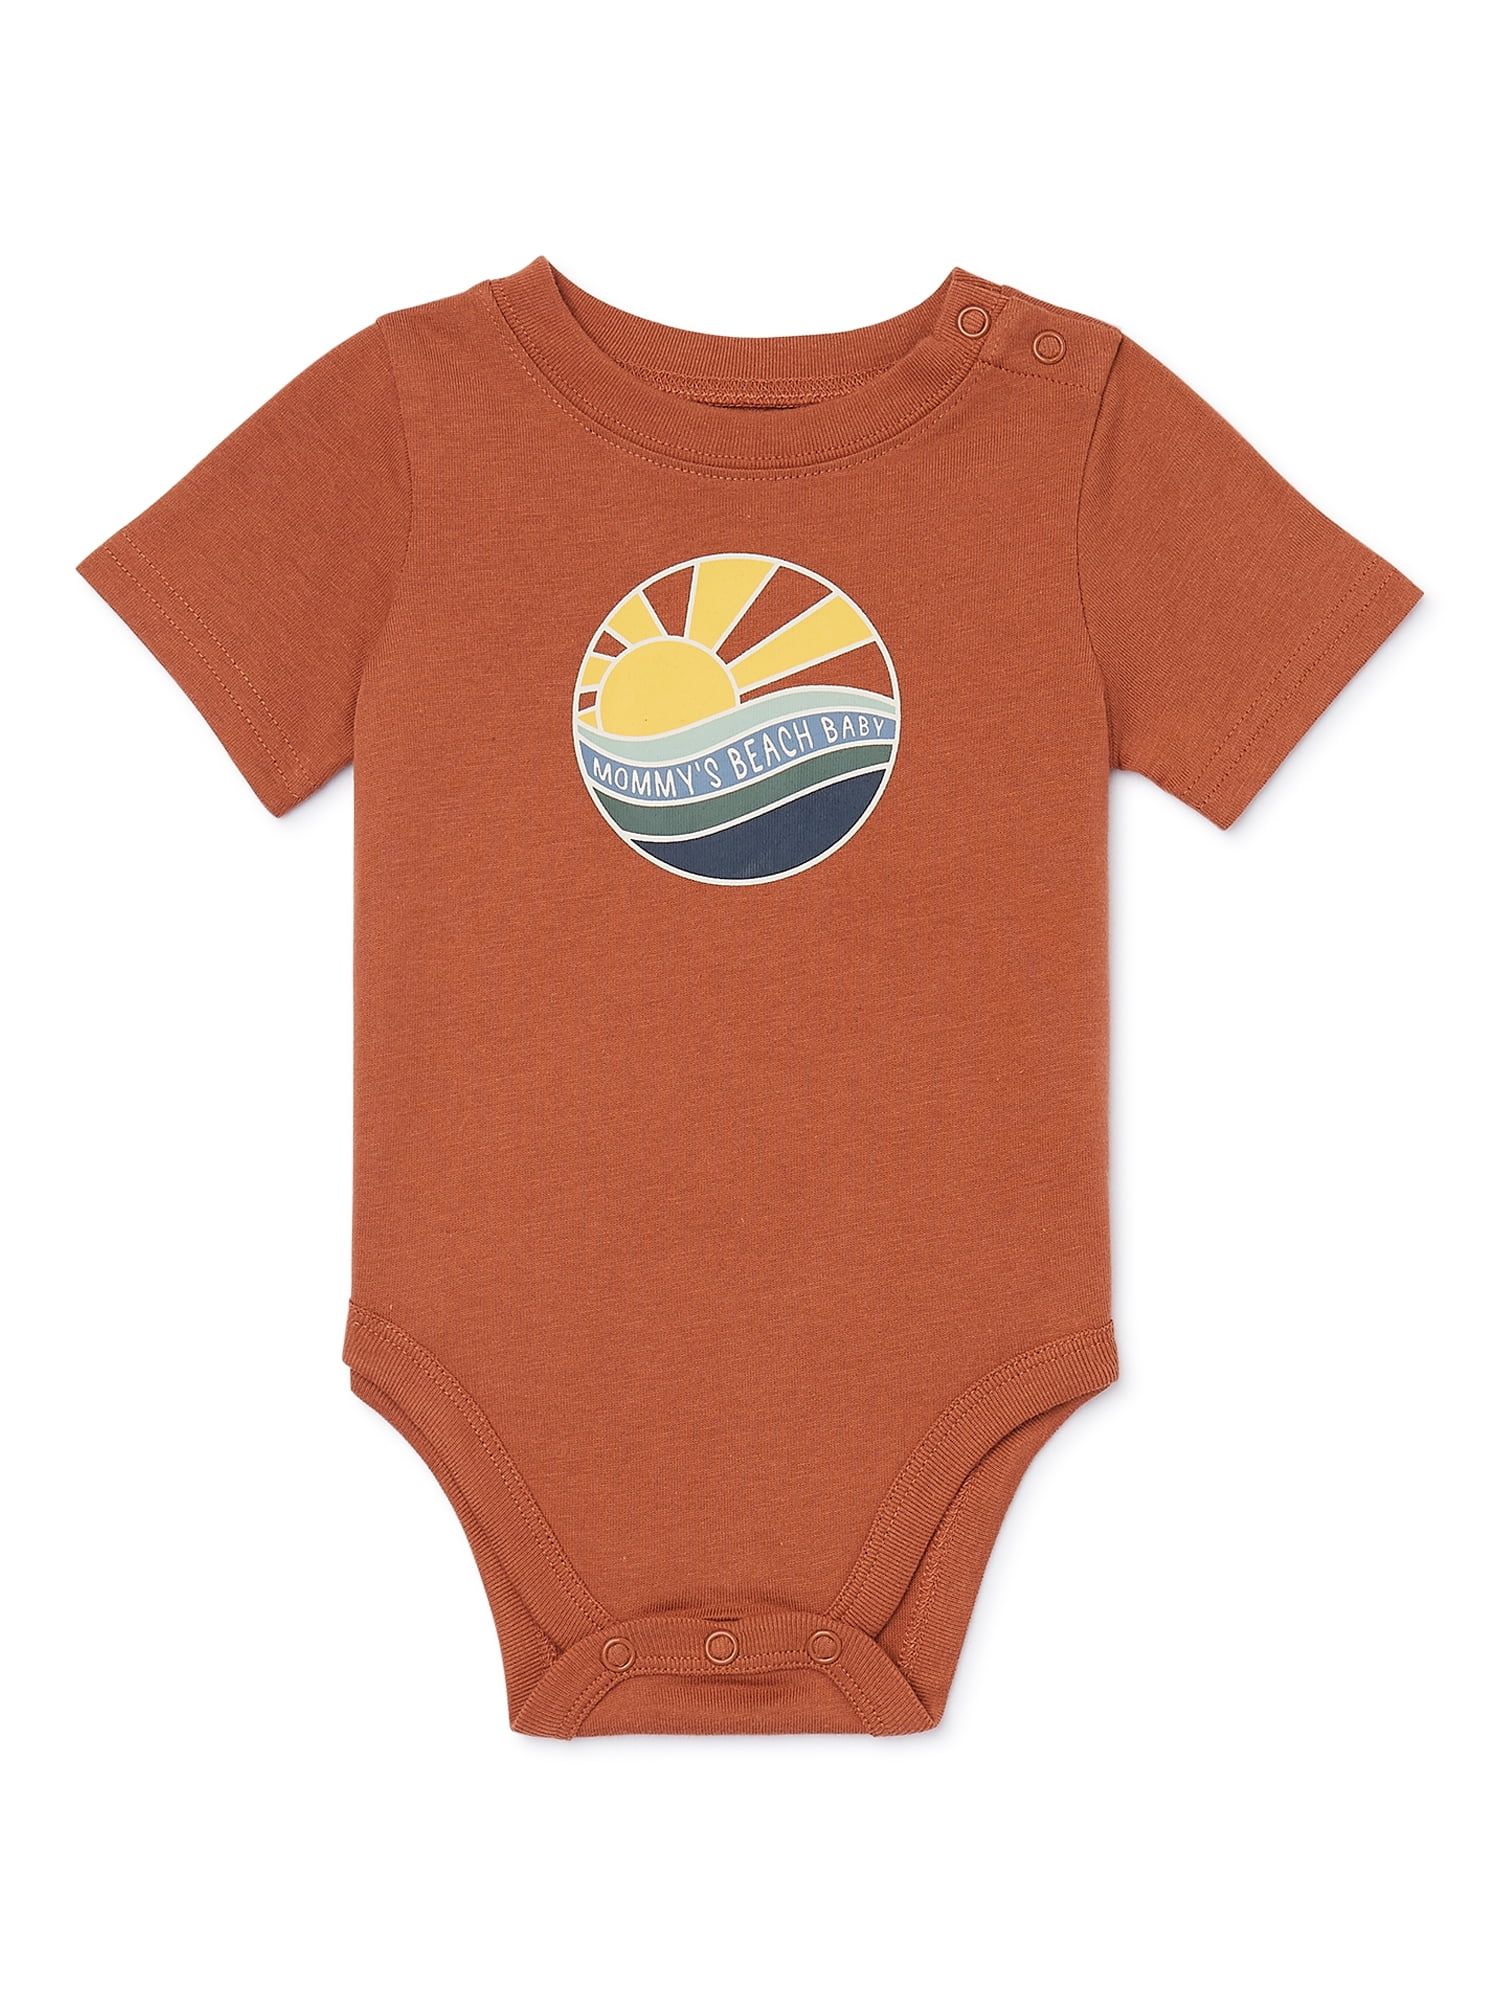 Garanimals Baby Boy Short Sleeve Graphic Bodysuit, Sizes 0-24 Months - Walmart.com | Walmart (US)